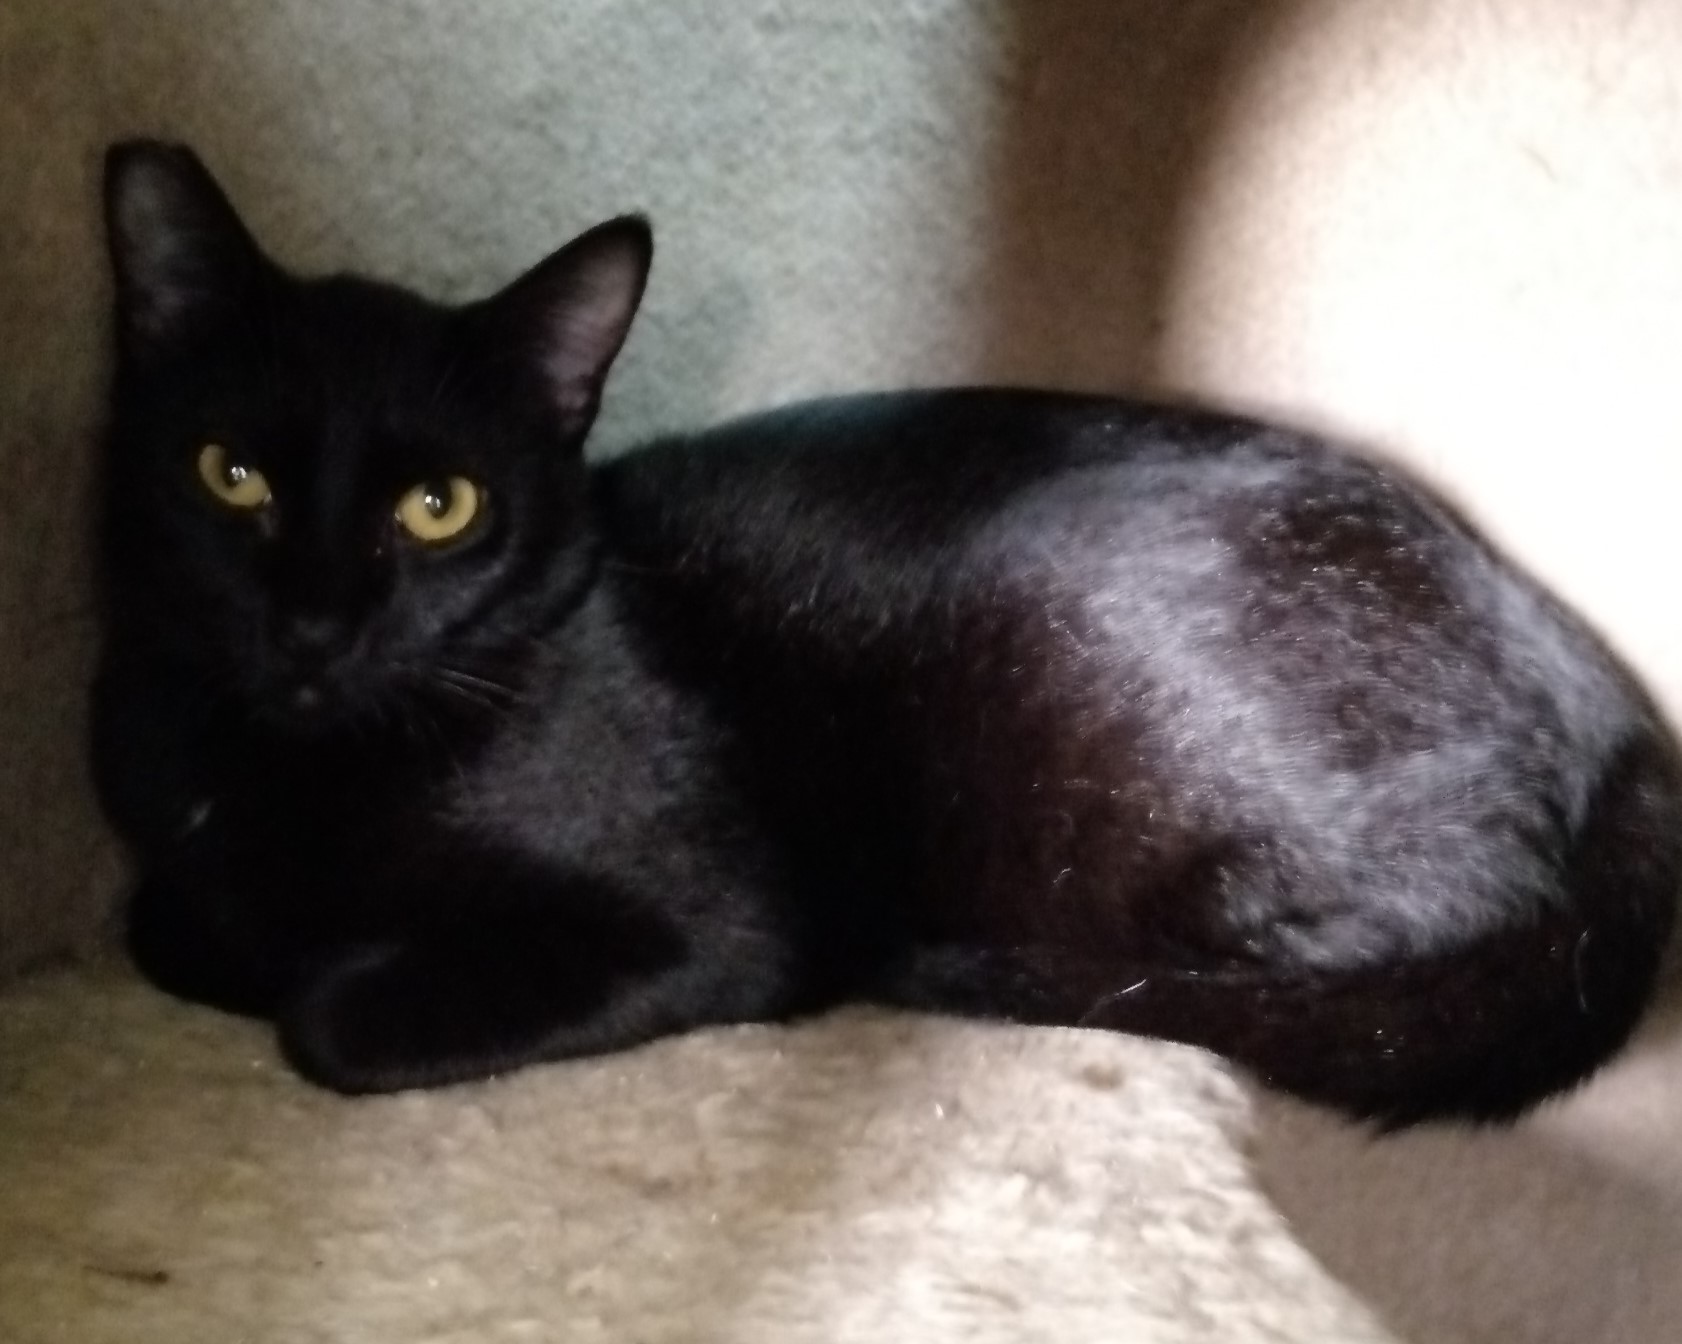 #PraCegoVer: Fotografia da gata Nina. Ele é todo preto e tem os olhos amarelos. Ele está olhando fixamente para a câmera.